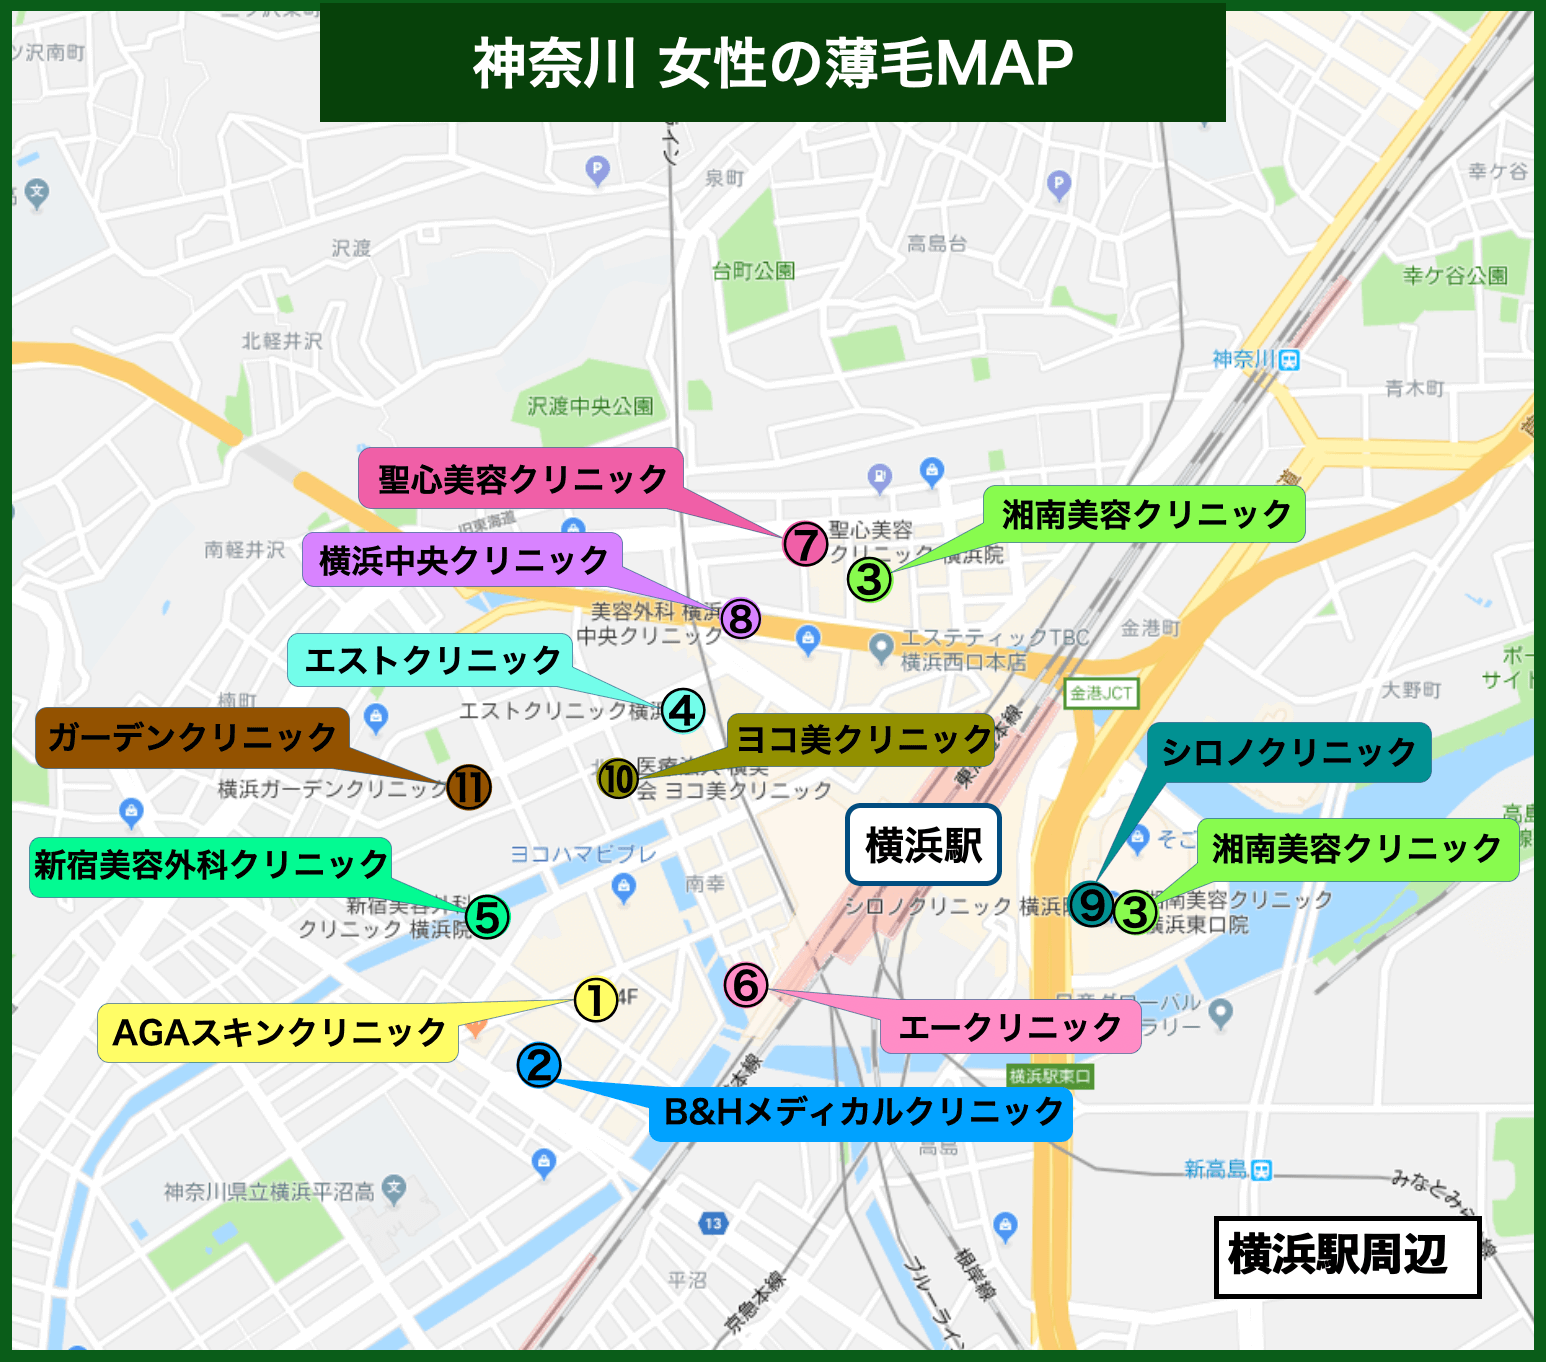 横浜 女性の薄毛MAP